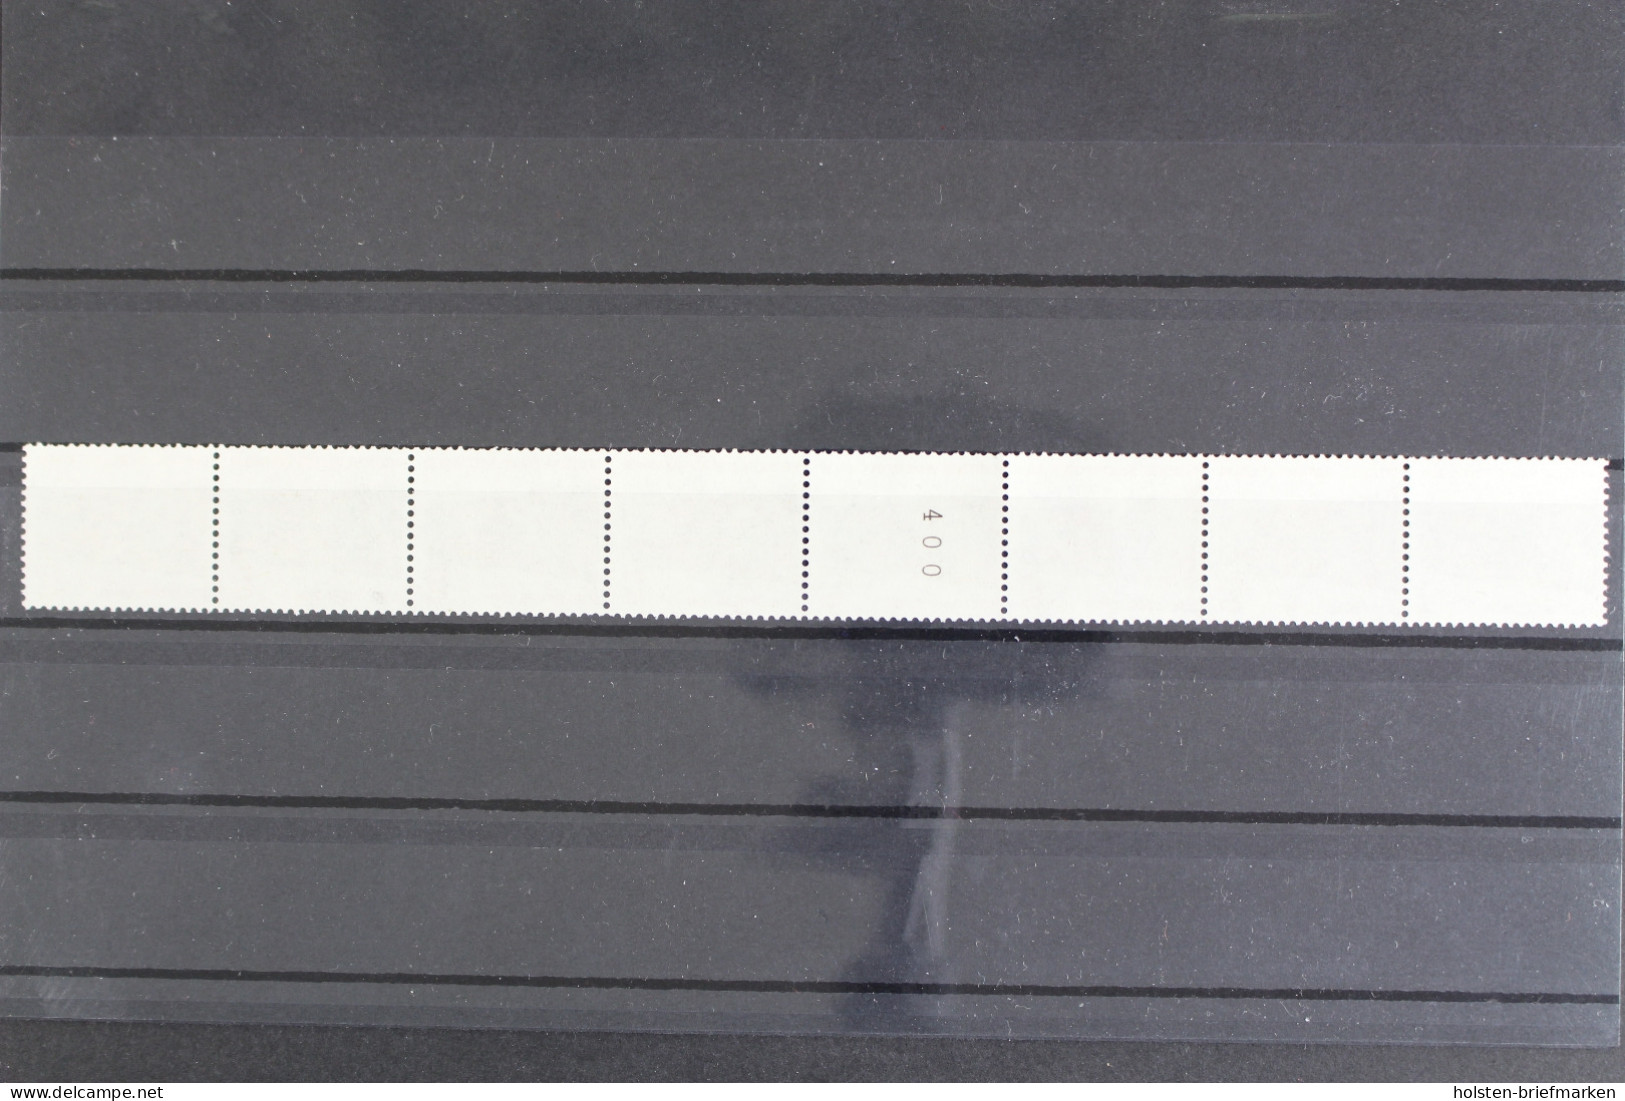 Berlin, MiNr. 815 R, 8er Streifen, ZN 400, Postfrisch - Roller Precancels